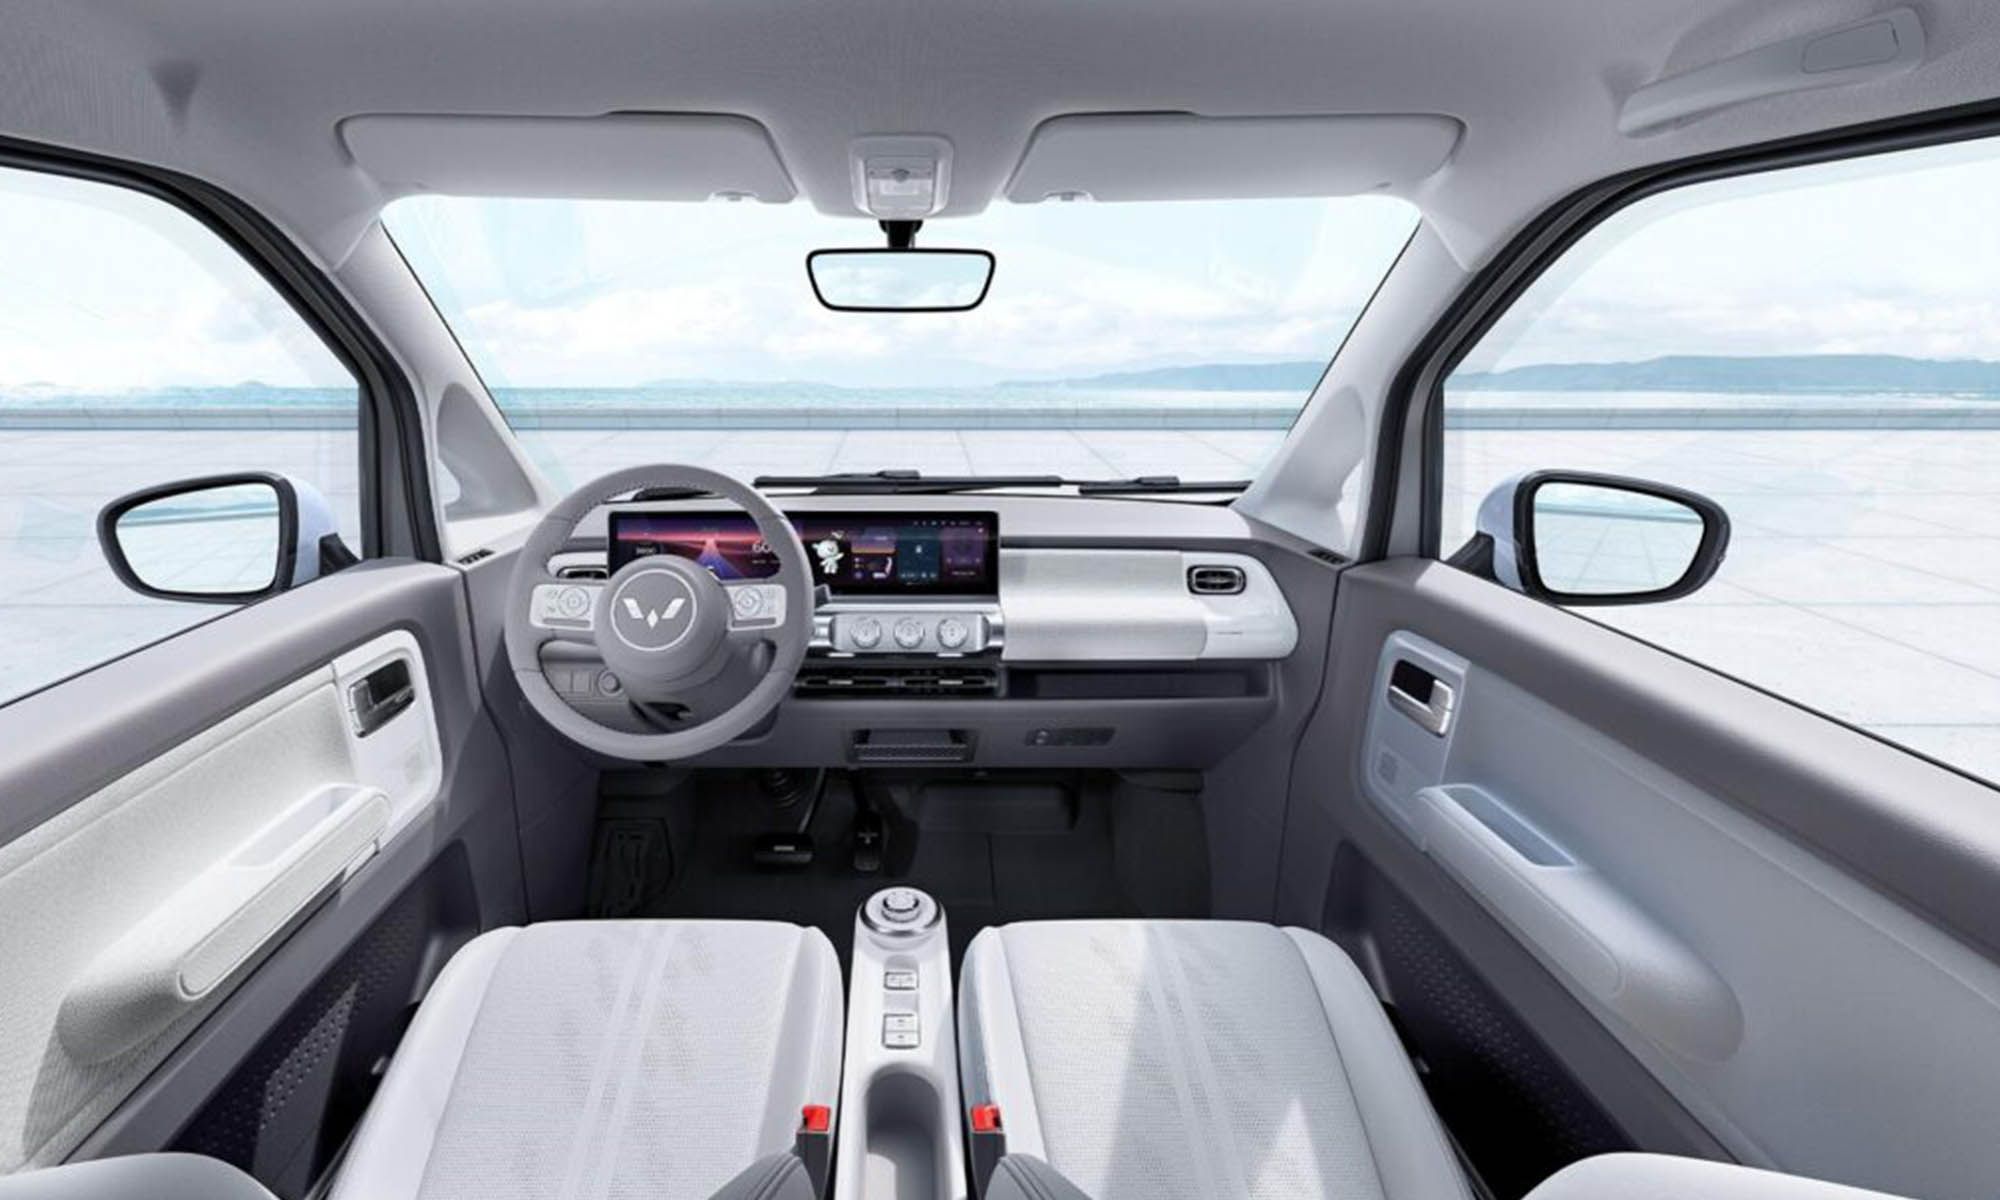 Si bien por fuera el MG Comet puede parecer un mini coche eléctrico muy aburrido, el interior ofrece un espacio para cuatro personas muy cuidado.